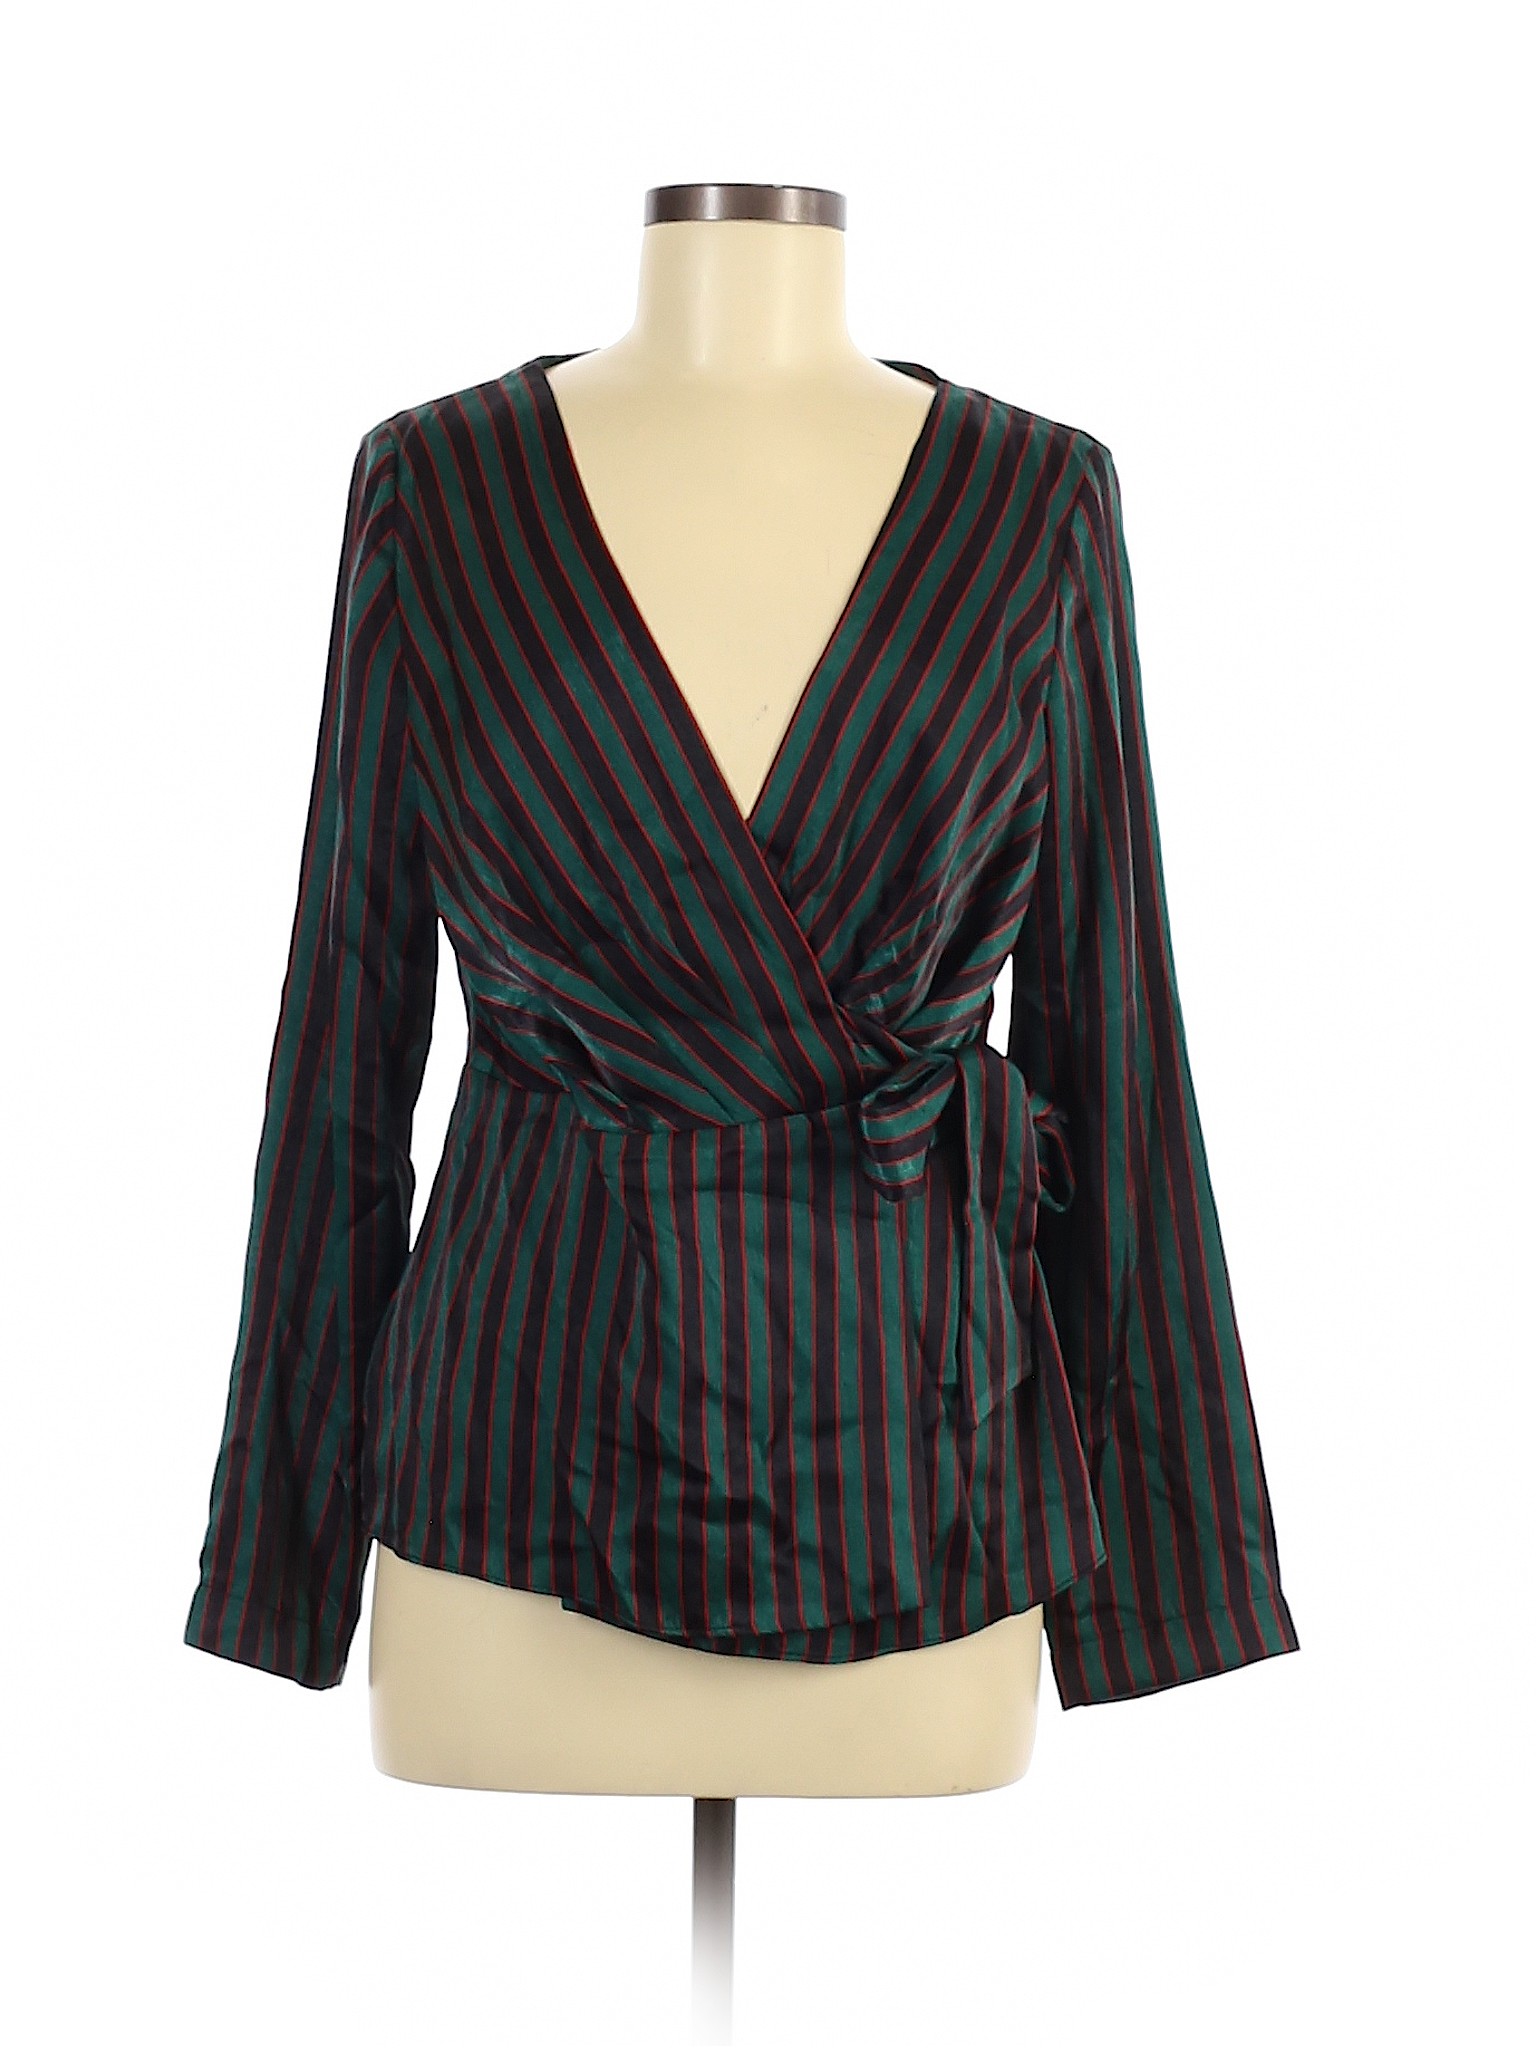 Zara TRF Women Green Long Sleeve Blouse M | eBay